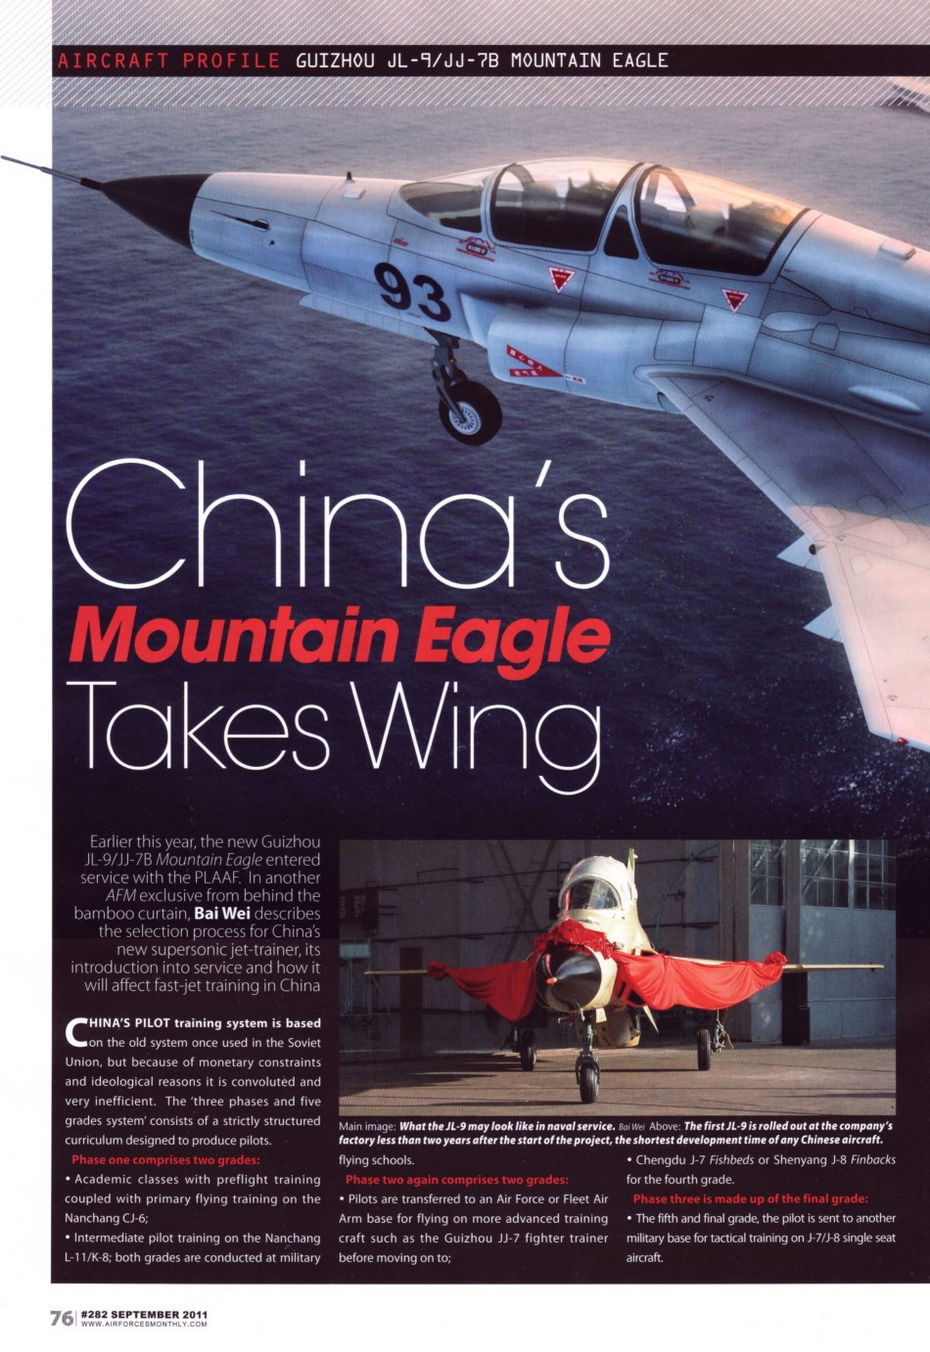 CG图很漂亮：美军专业杂志整版介绍中国山鹰高教机